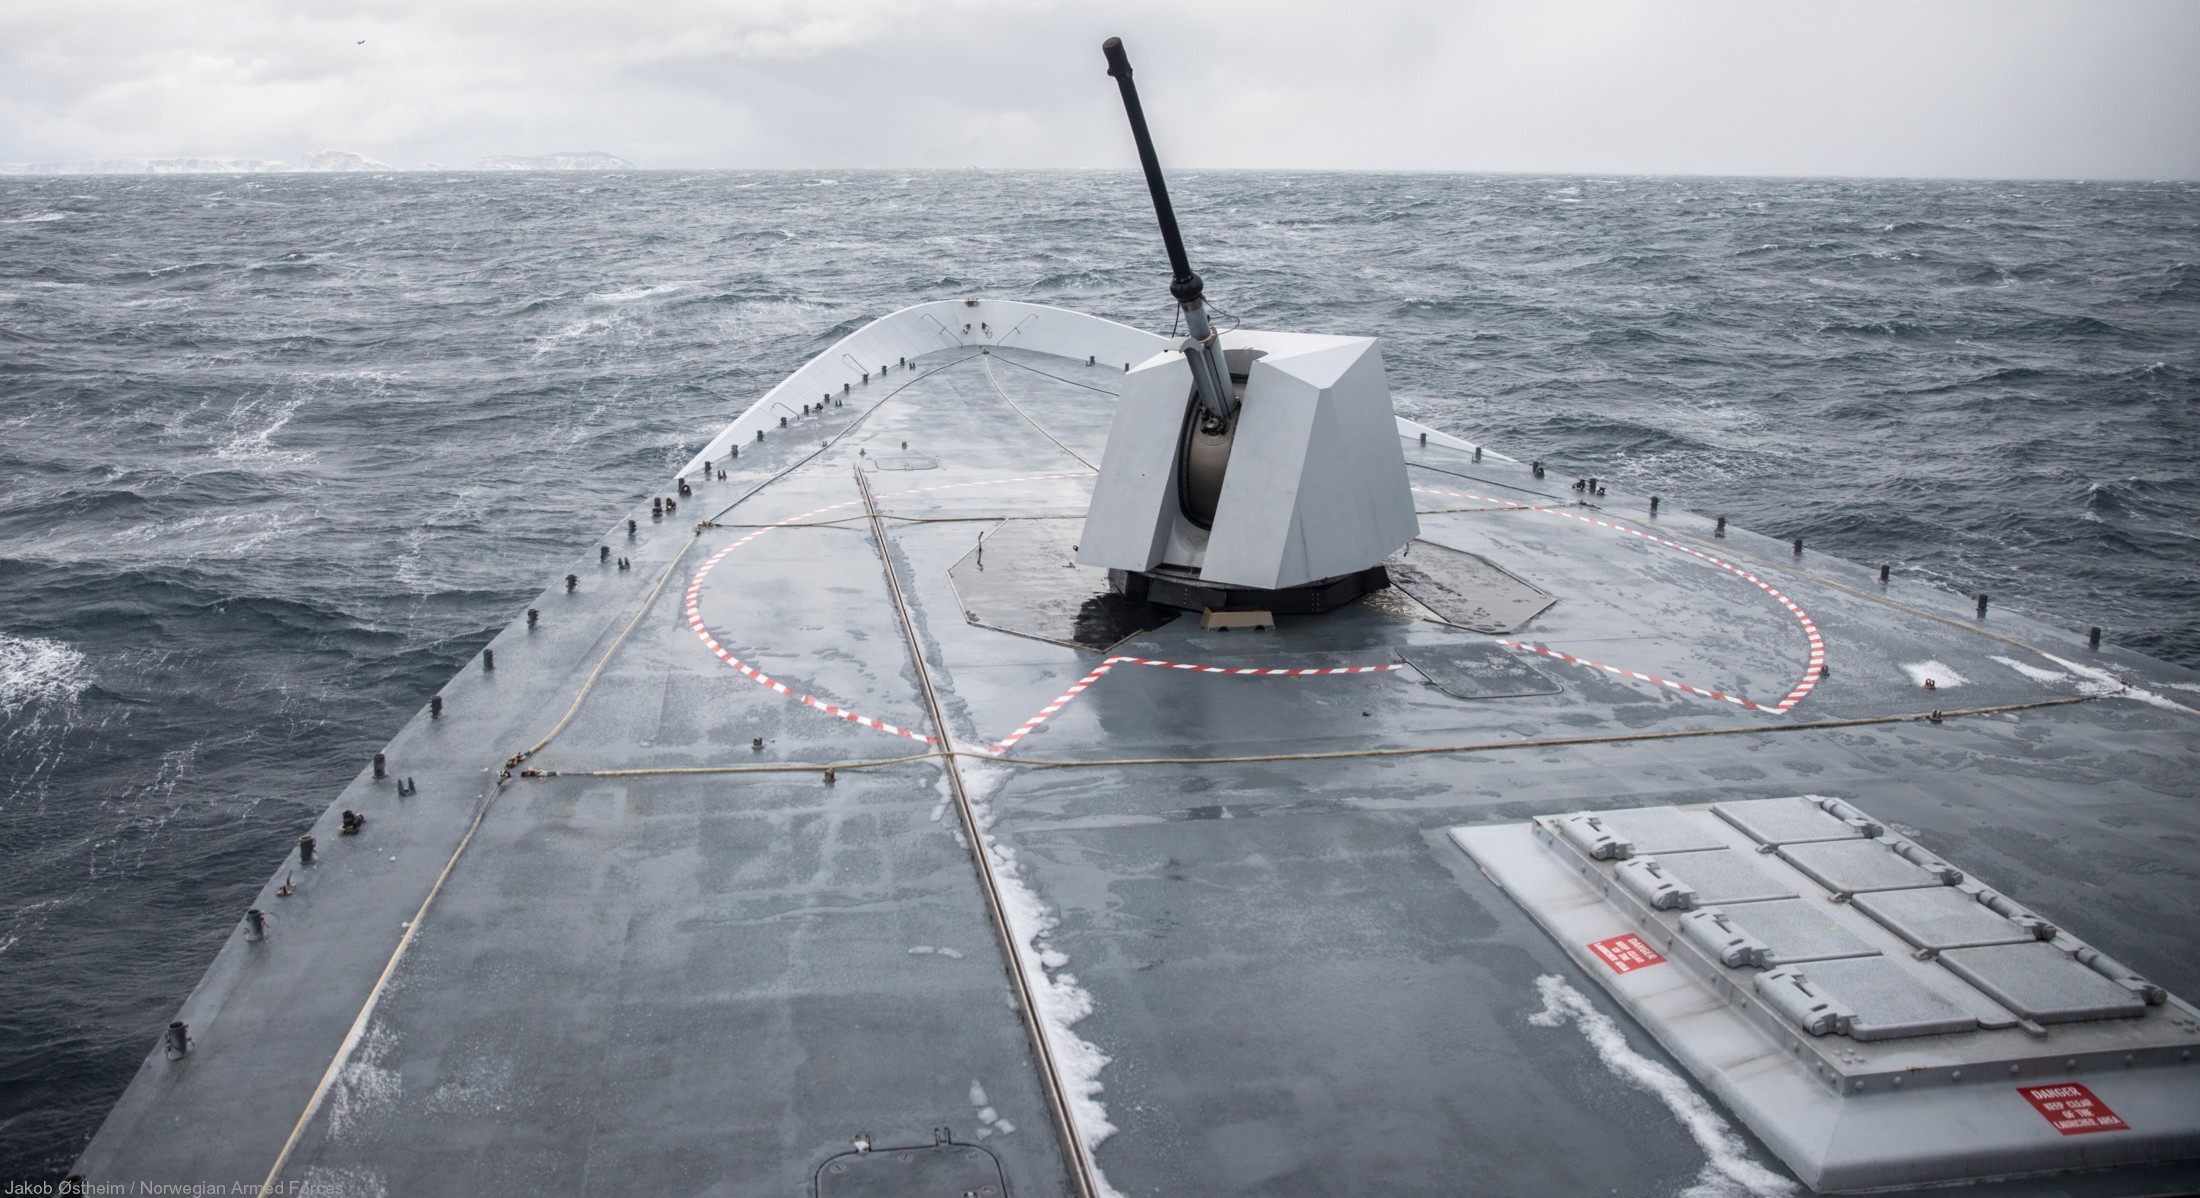 f-310 fridtjof nansen hnoms knm frigate royal norwegian navy sjoforsvaret 37 oto melara 76/62 super rapid gun